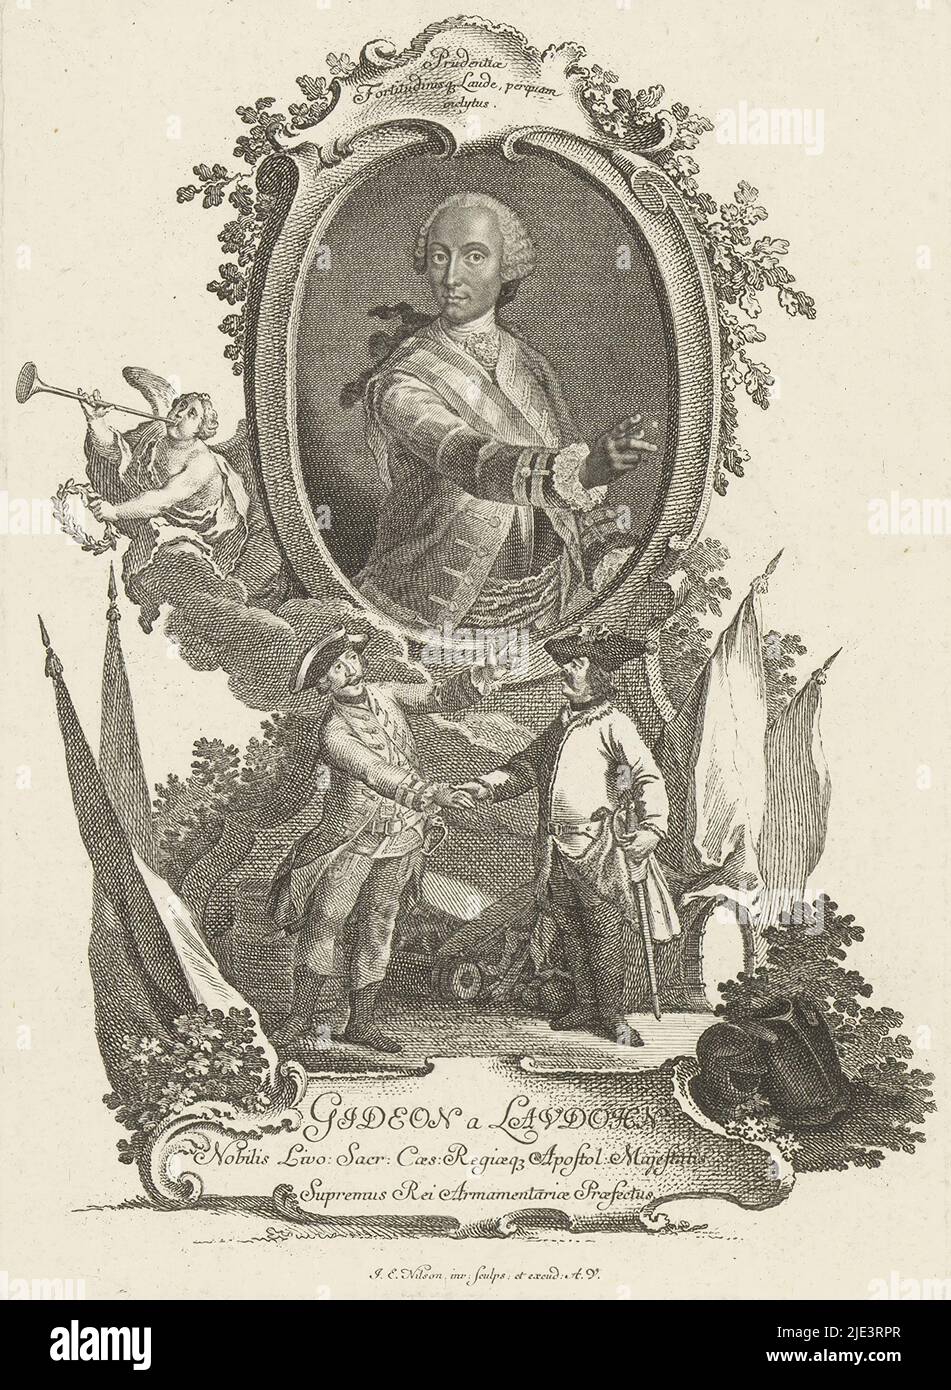 Porträt von Gideon Ernst von Laudon, Druckerei: Johann Esaias Nilson, (auf Objekt erwähnt), Augsburg, 1731 - 1788, Papier, Gravur, Radierung, H 220 mm - B 158 mm Stockfoto